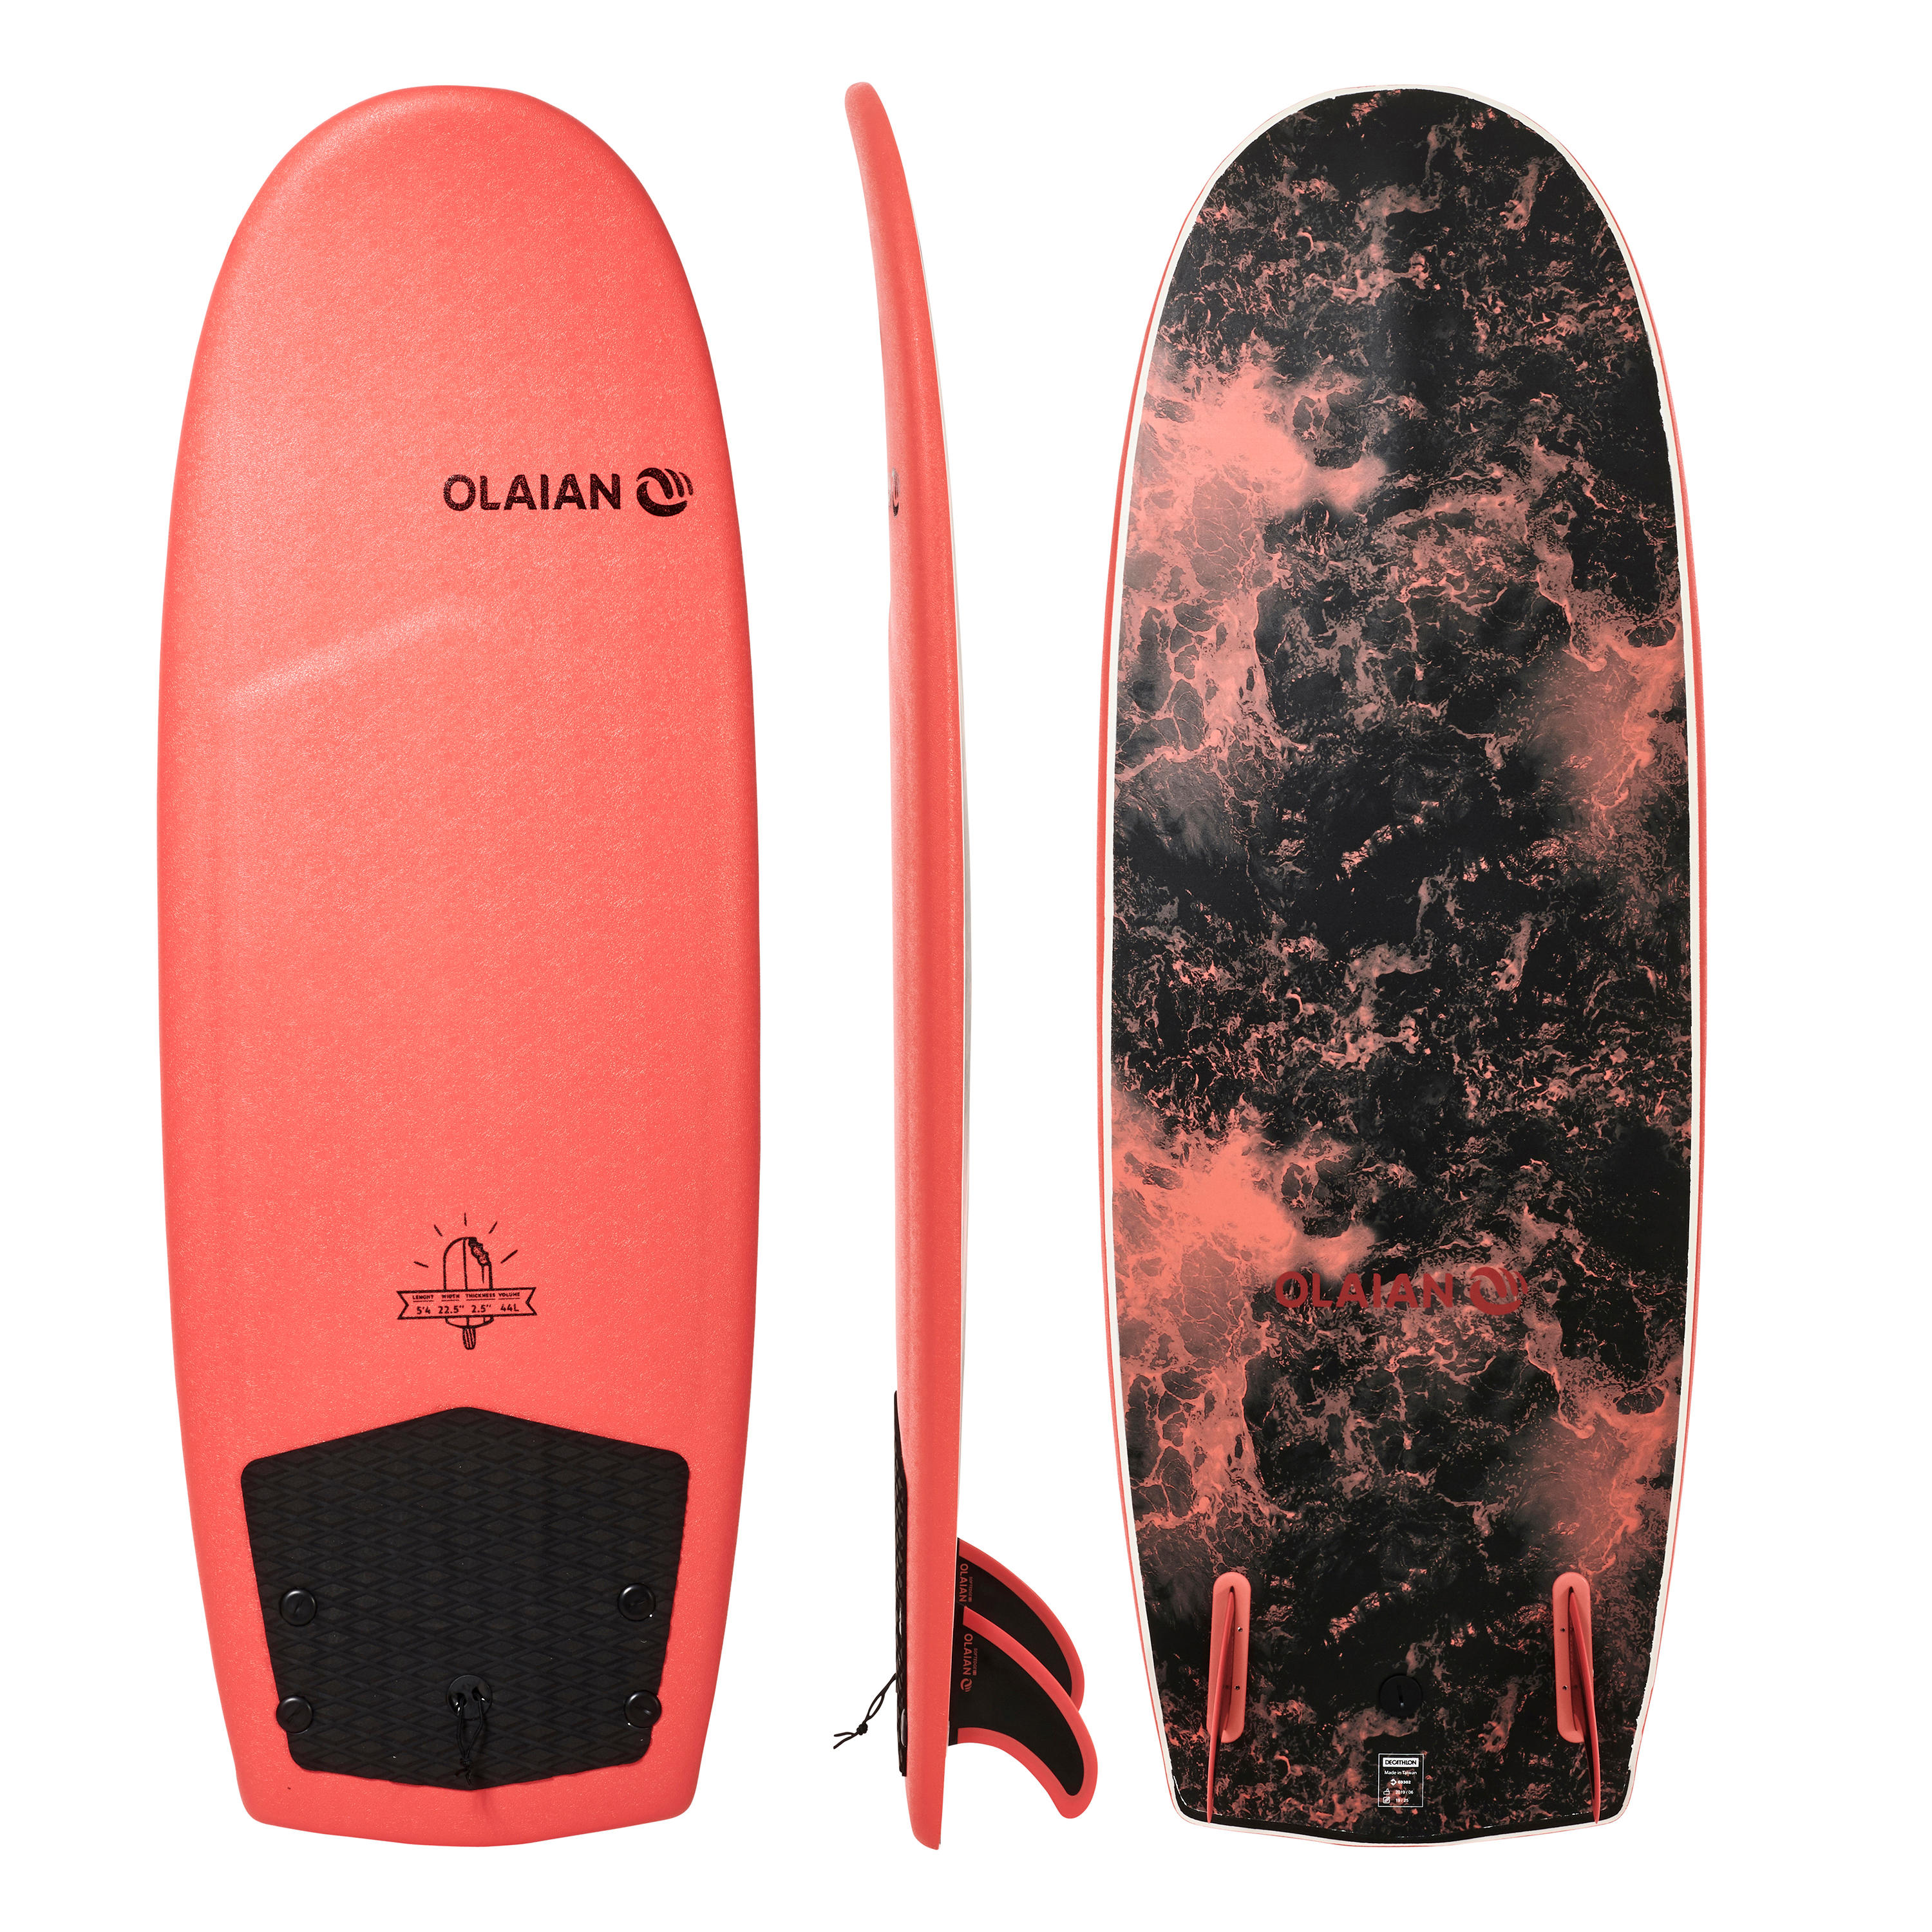 OLAIAN Surfboard Schaumstoff 900 5'4" Lieferung mit 2 Finnen